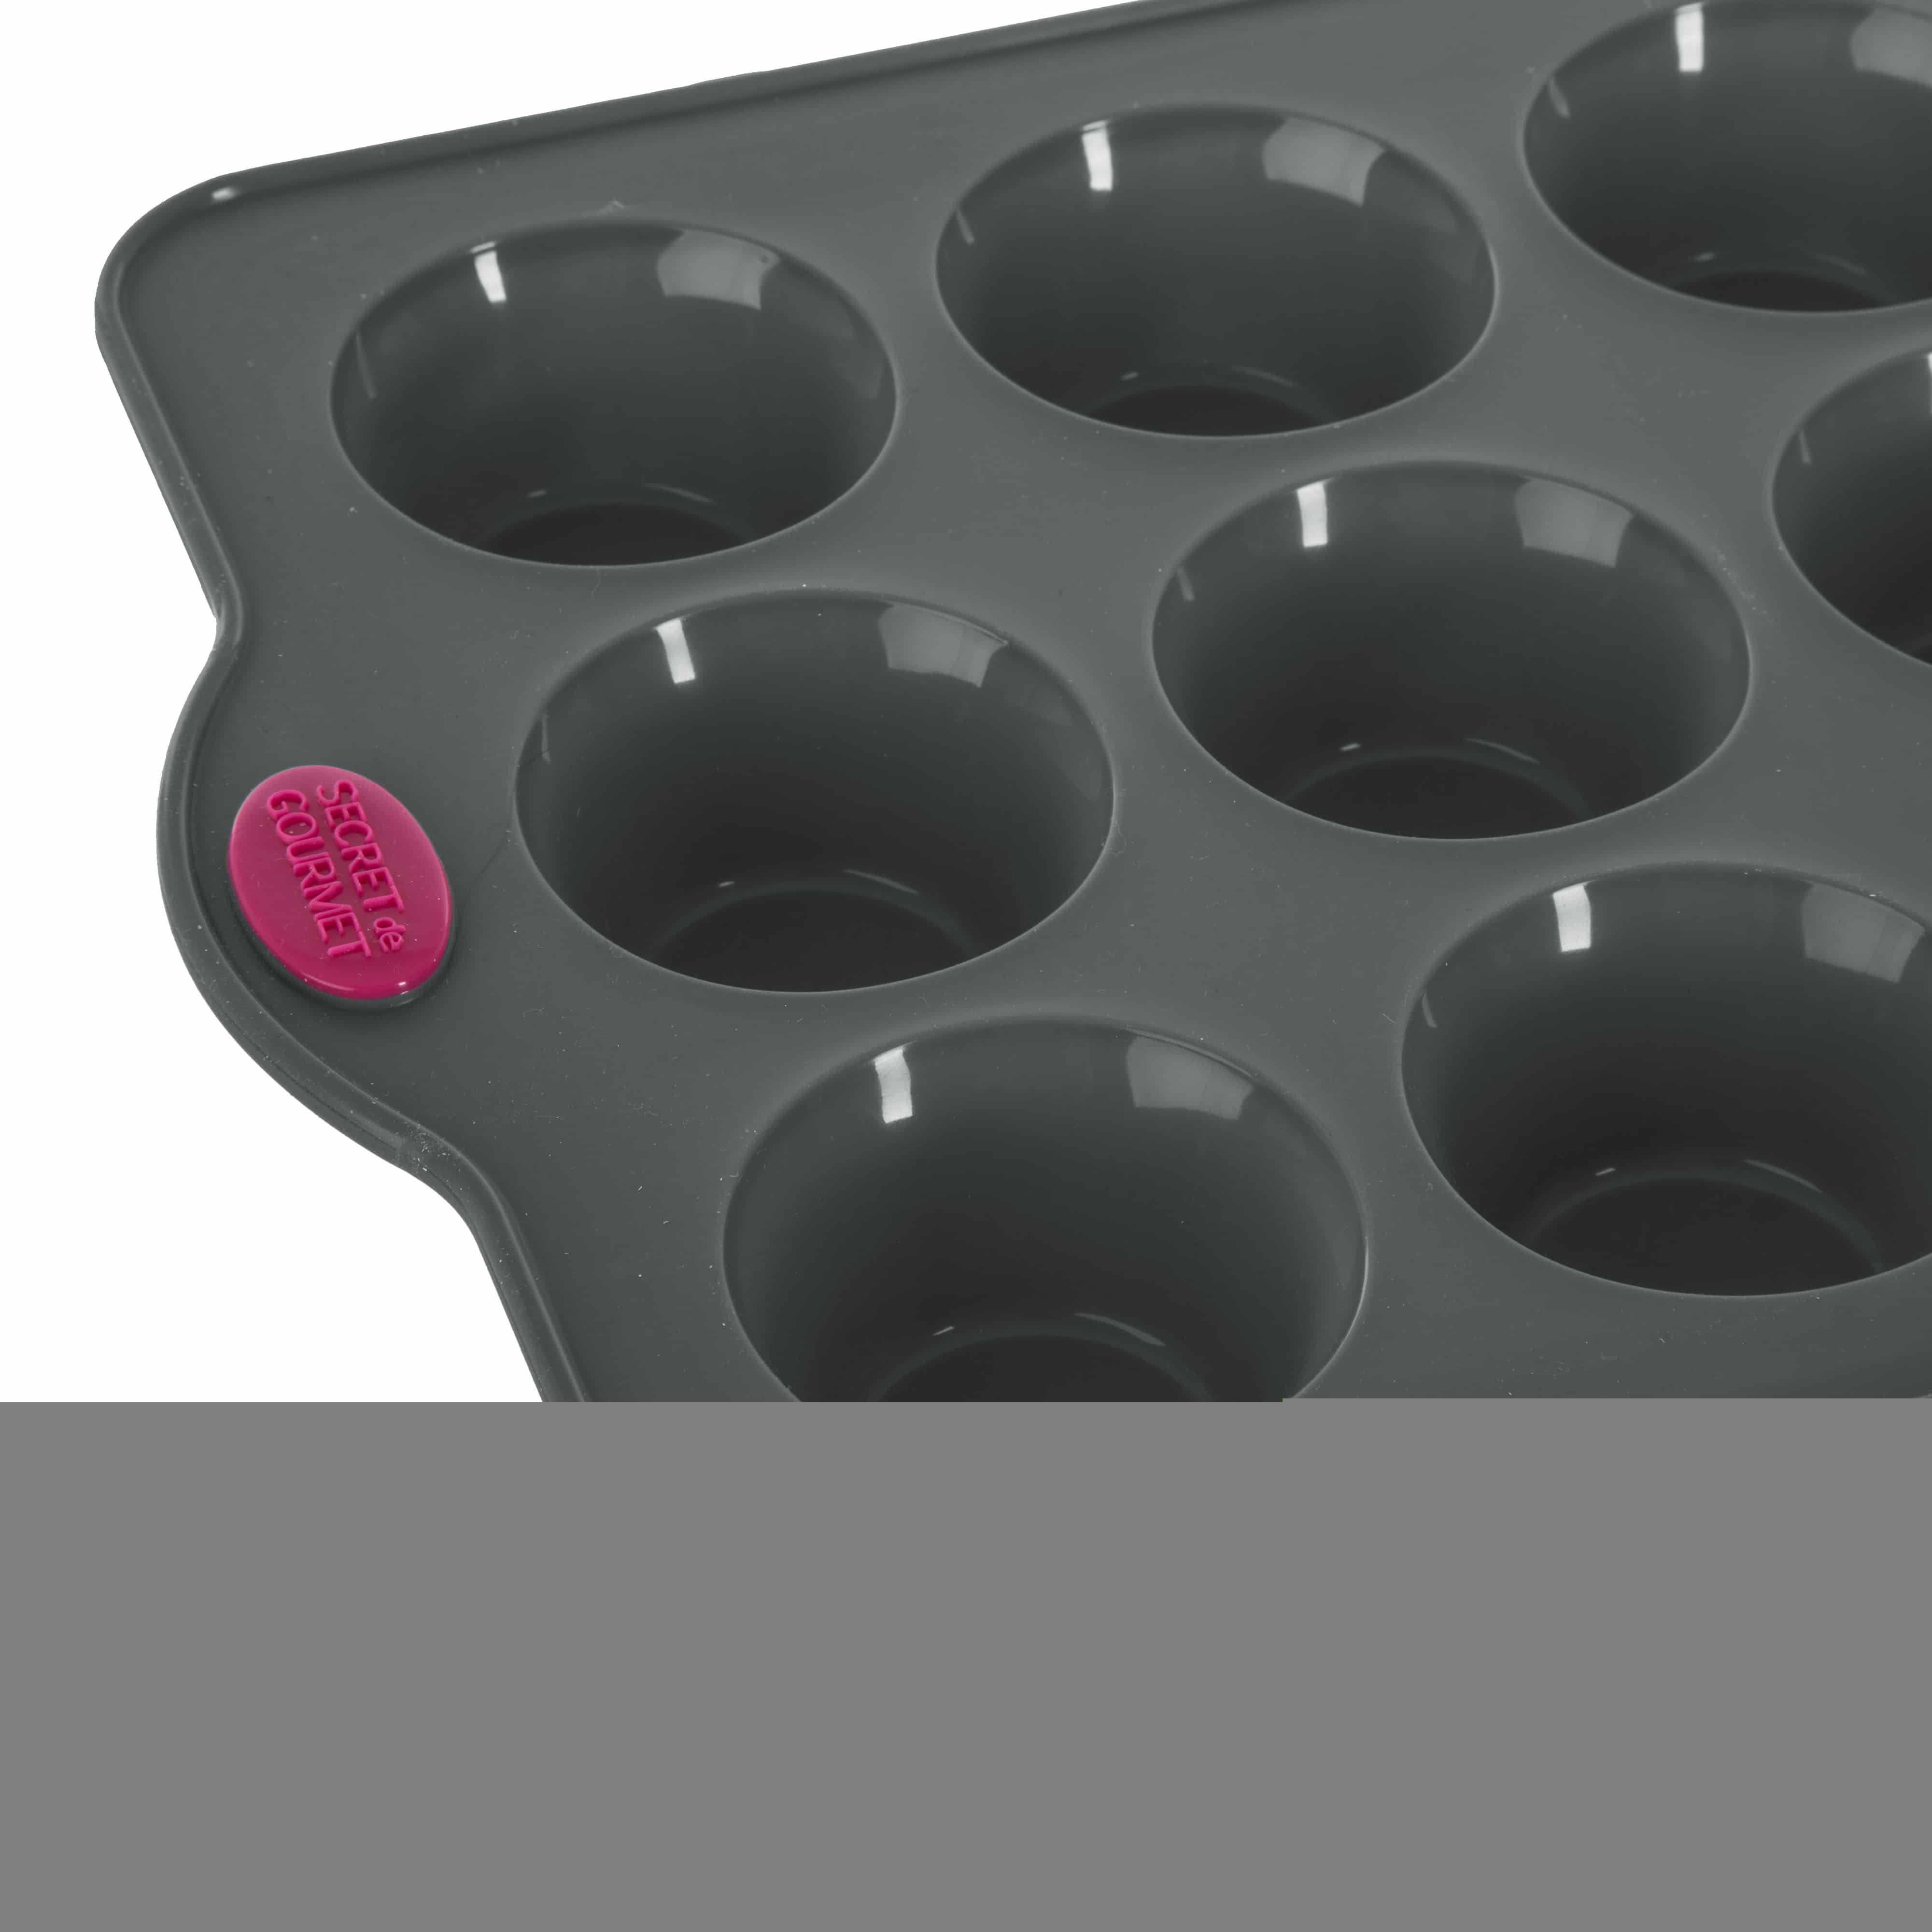 4goodz Siliconen Bakvorm 12 Muffins met vaste randen - 33x23x3,5 cm